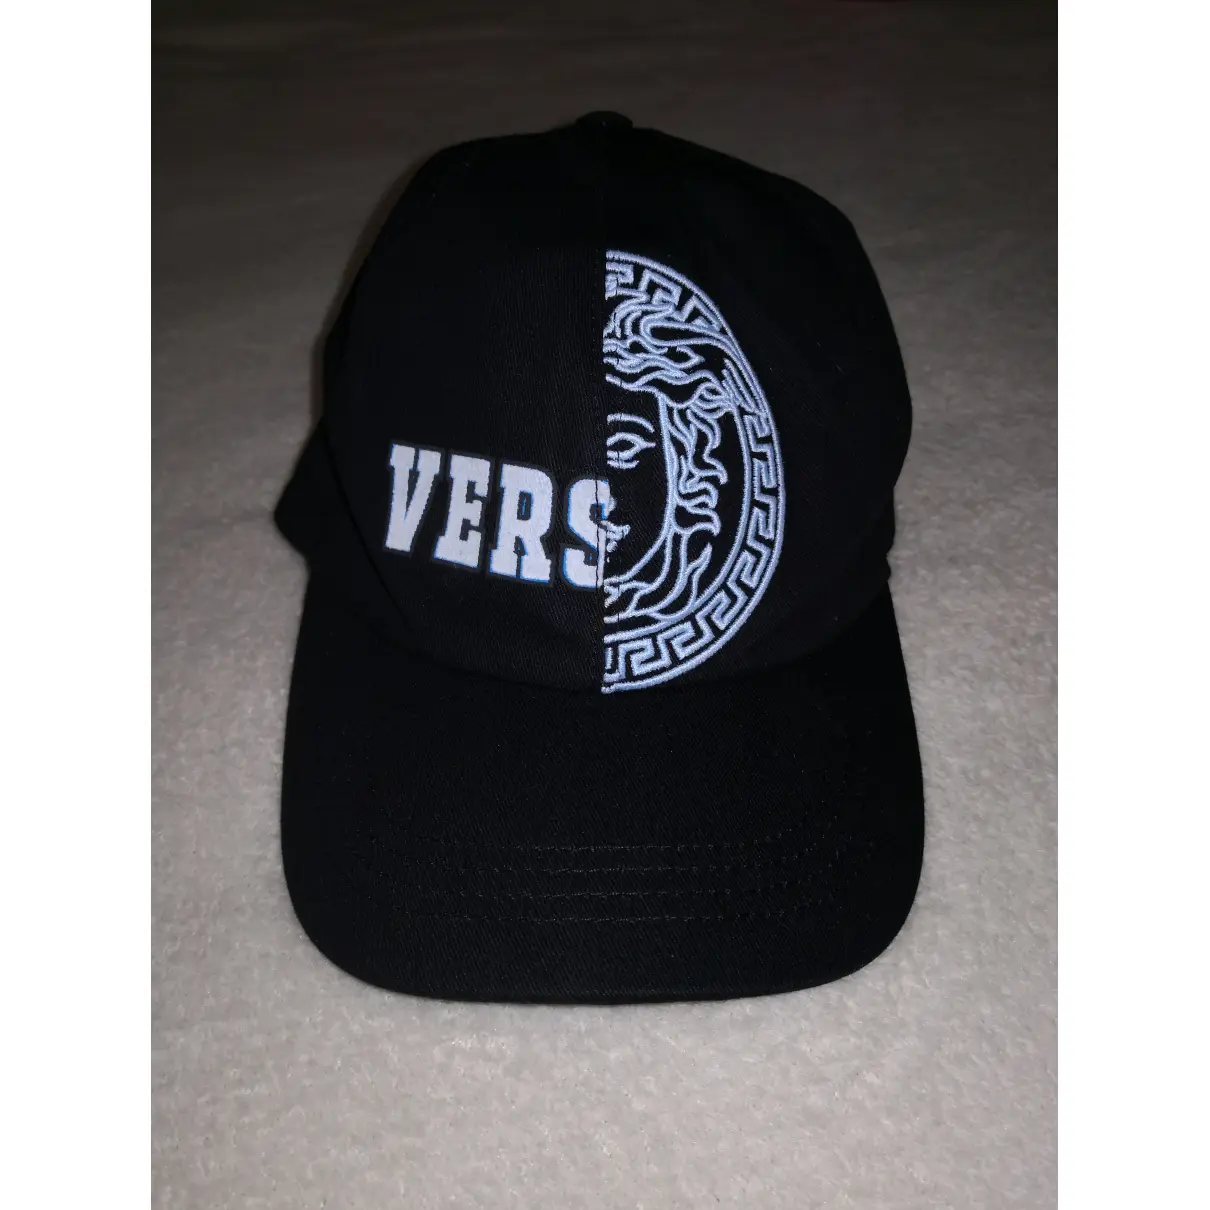 Buy Versace Cloth hat online